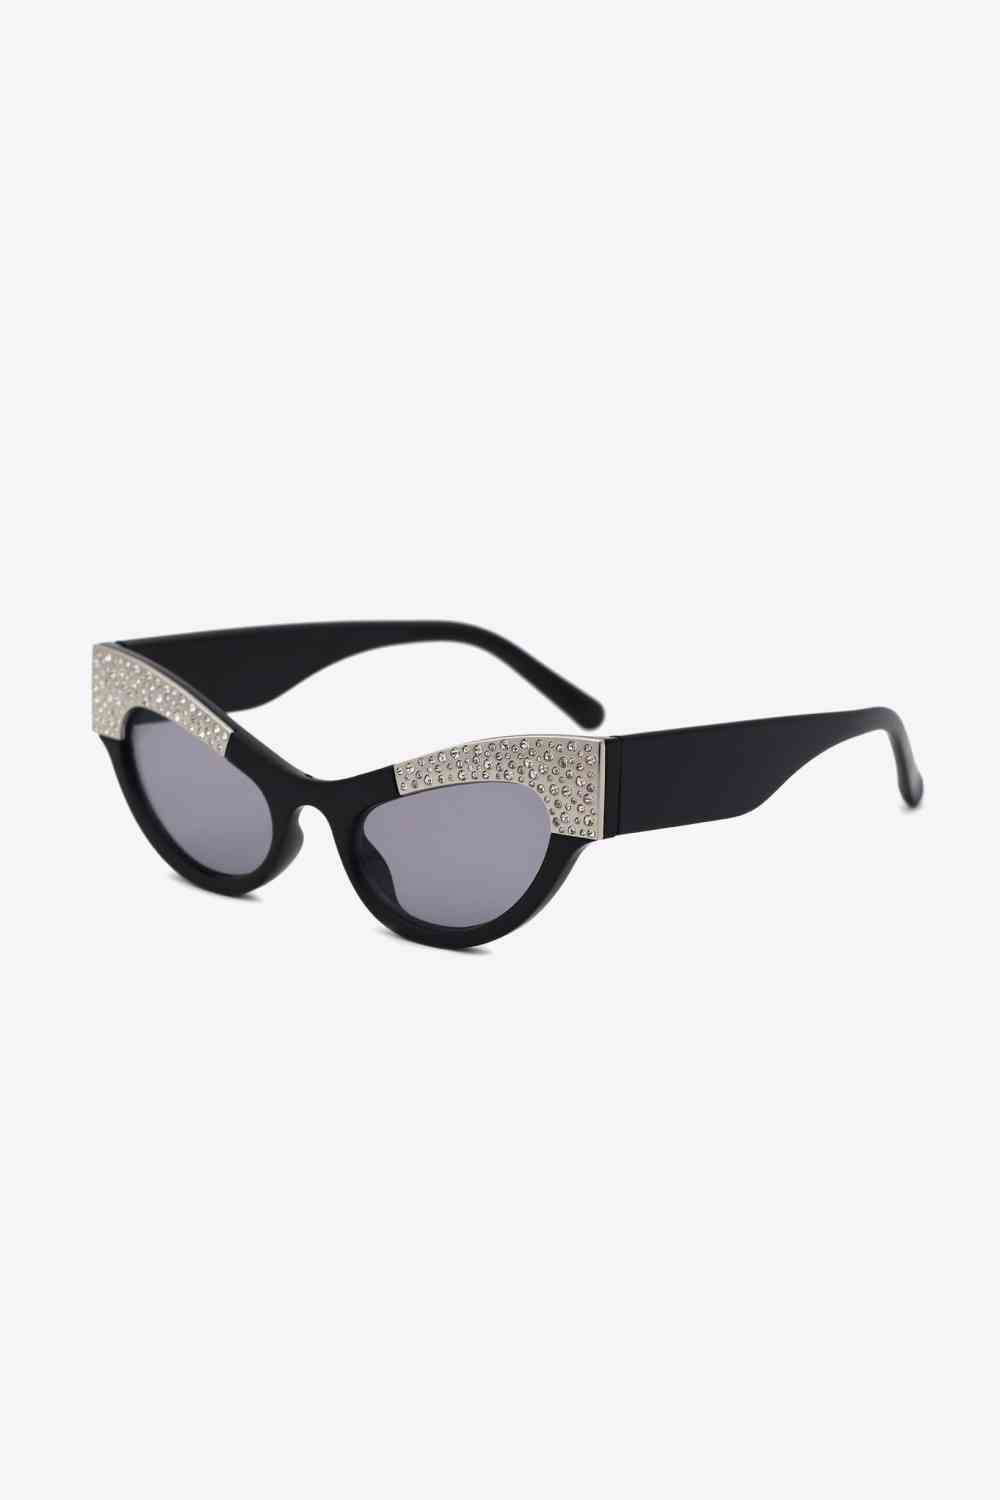 TEEK - Regal Rhinestone Trim Cat-Eye Sunglasses EYEGLASSES TEEK Trend Black  